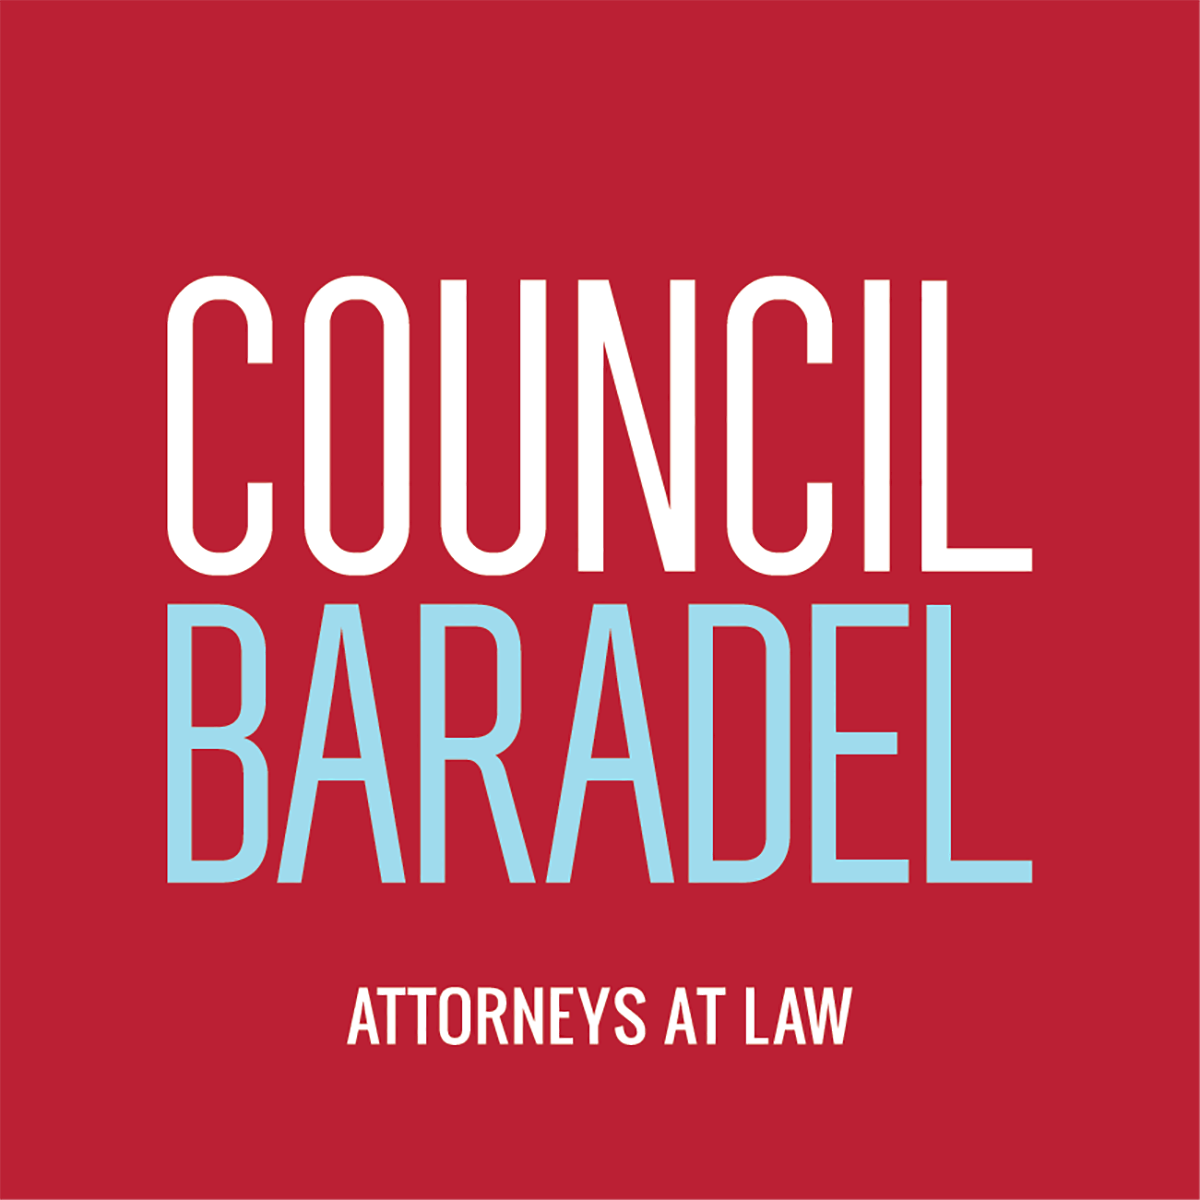 Council Baradel Company Logo